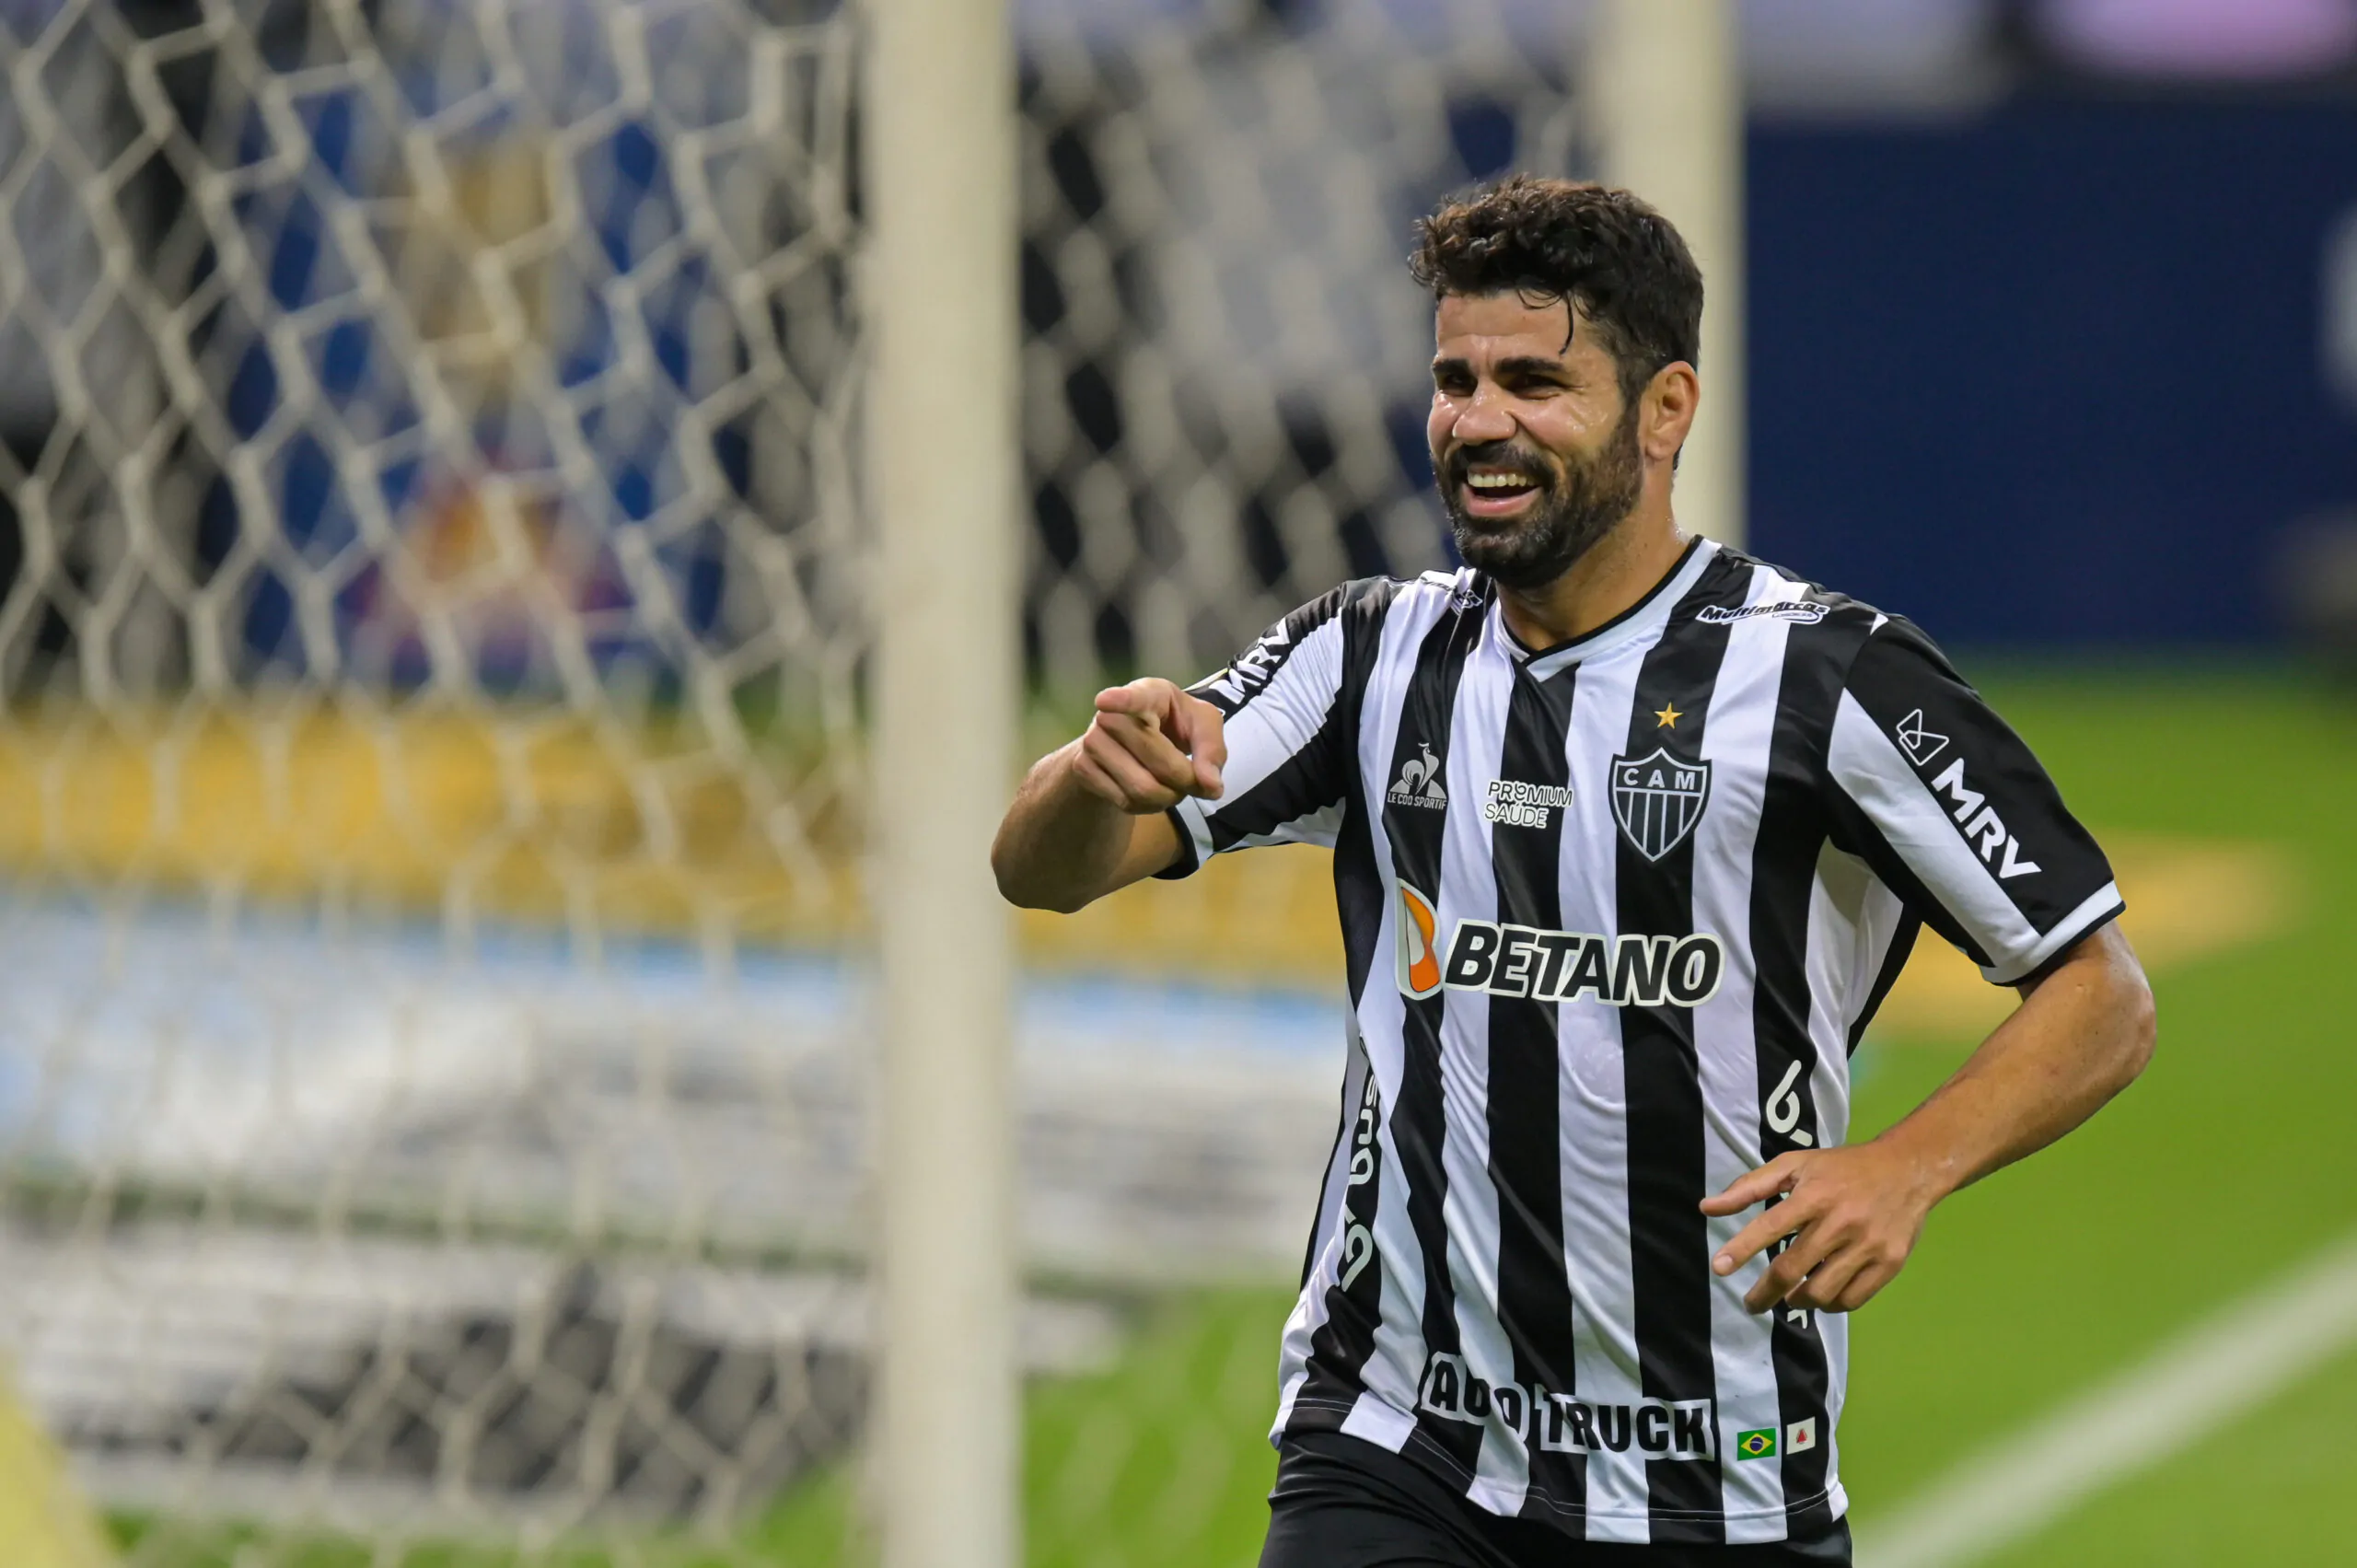 Calciomercato, accordo vicino: Diego Costa torna in Premier League